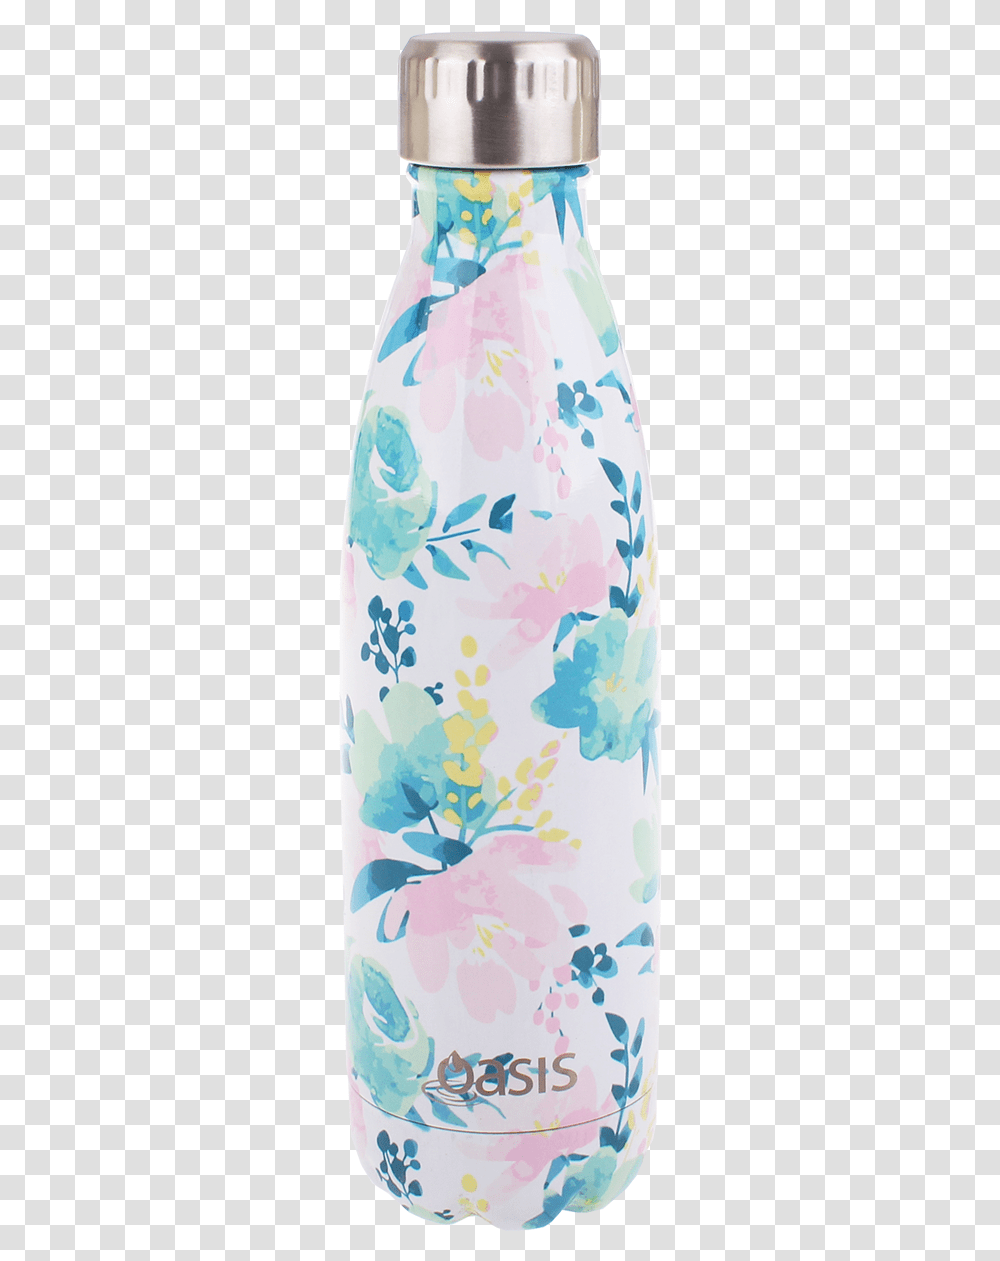 Oasis Water Bottle, Plant, Flower, Floral Design Transparent Png